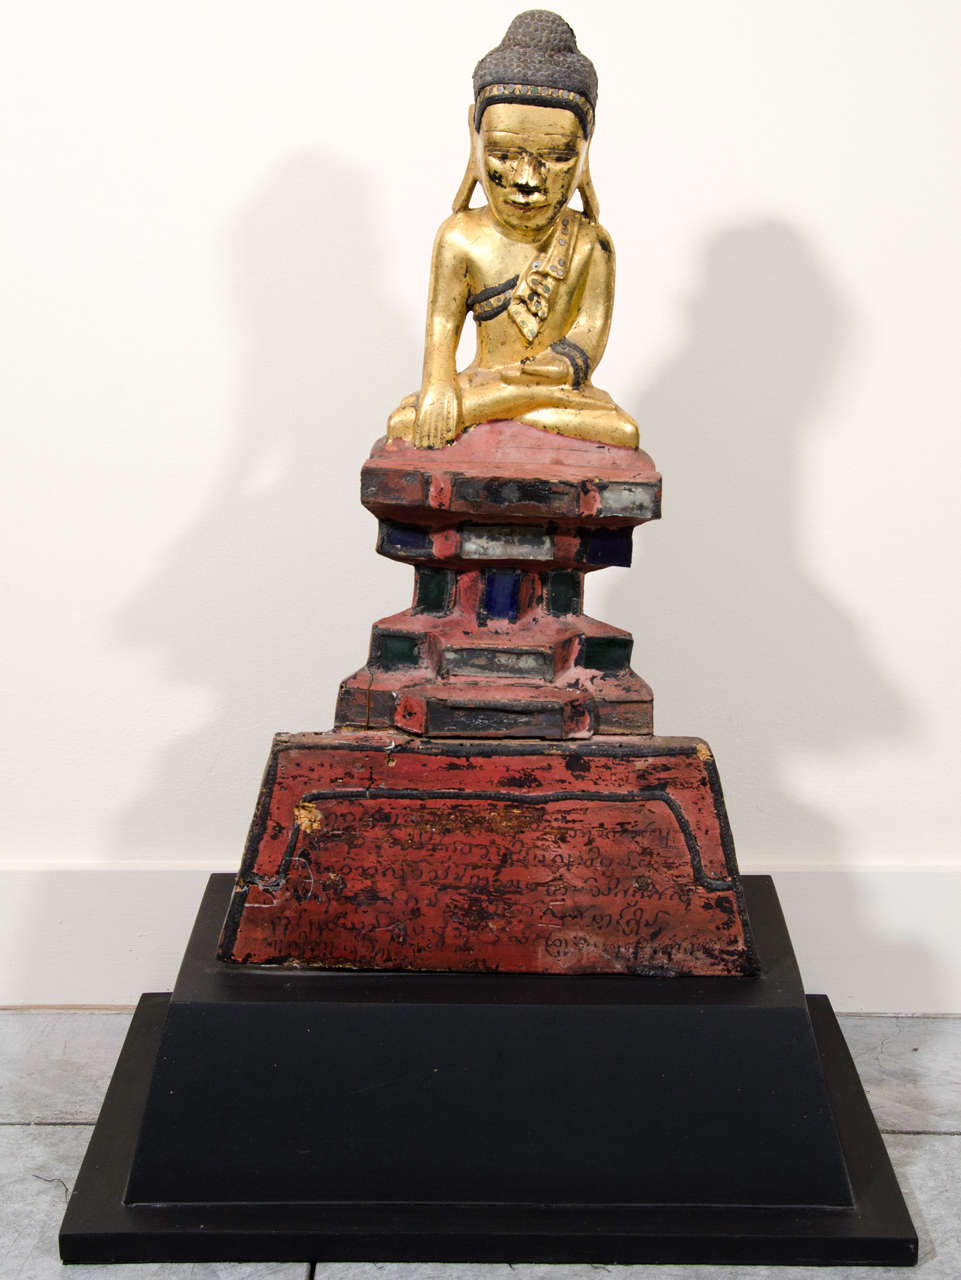 Bouddha Karen inhabituel sur un piédestal rouge avec des écritures bouddhistes en caractères birmans. En provenance de Birmanie, C.I.C., vers 1900.
BH440a